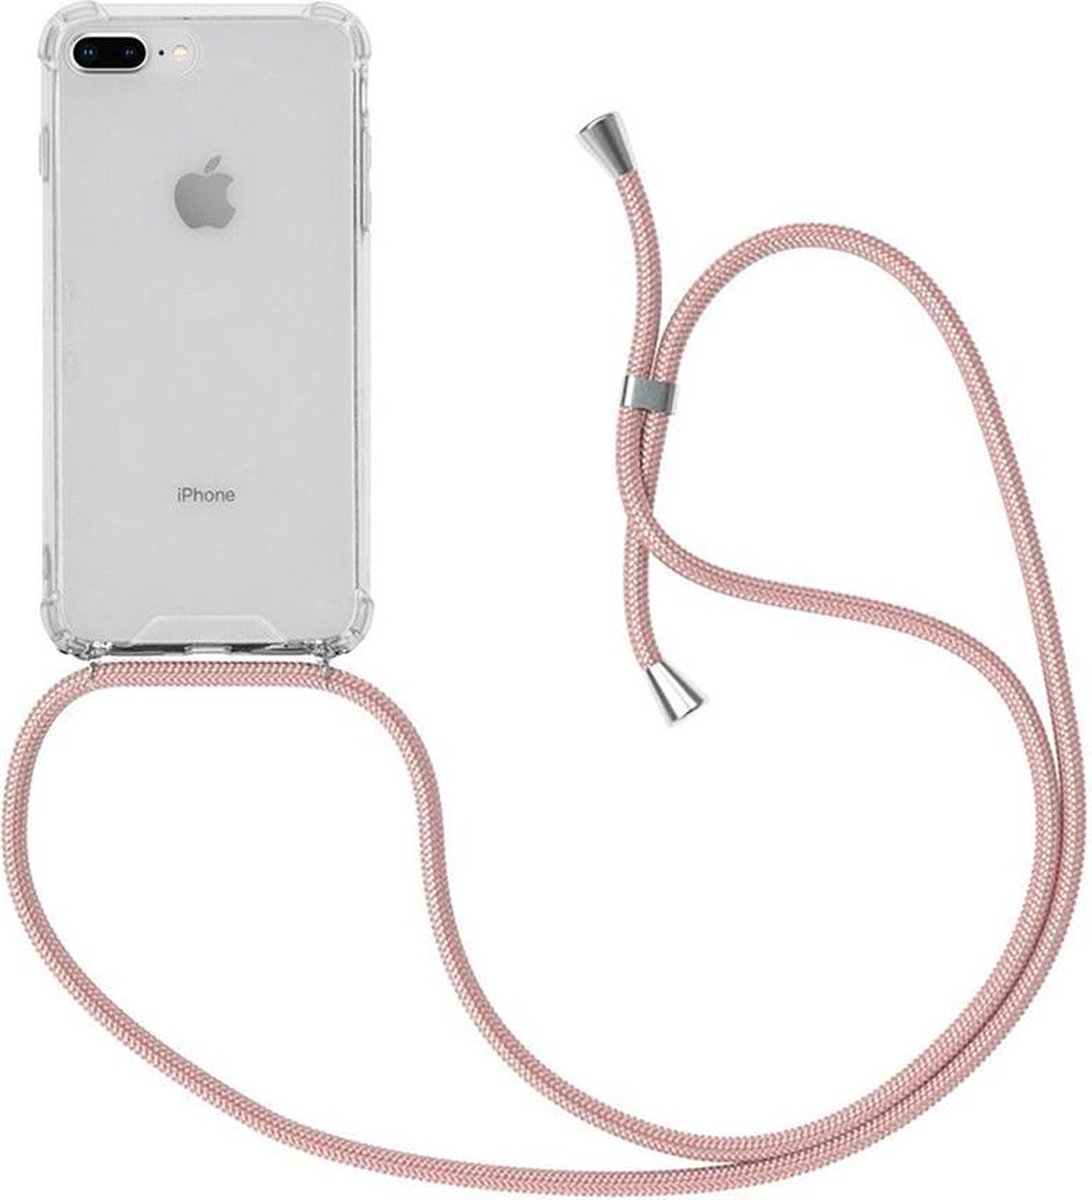 iPhone 6/6S Plus transparente avec coque antichoc cordon rose | bol.com